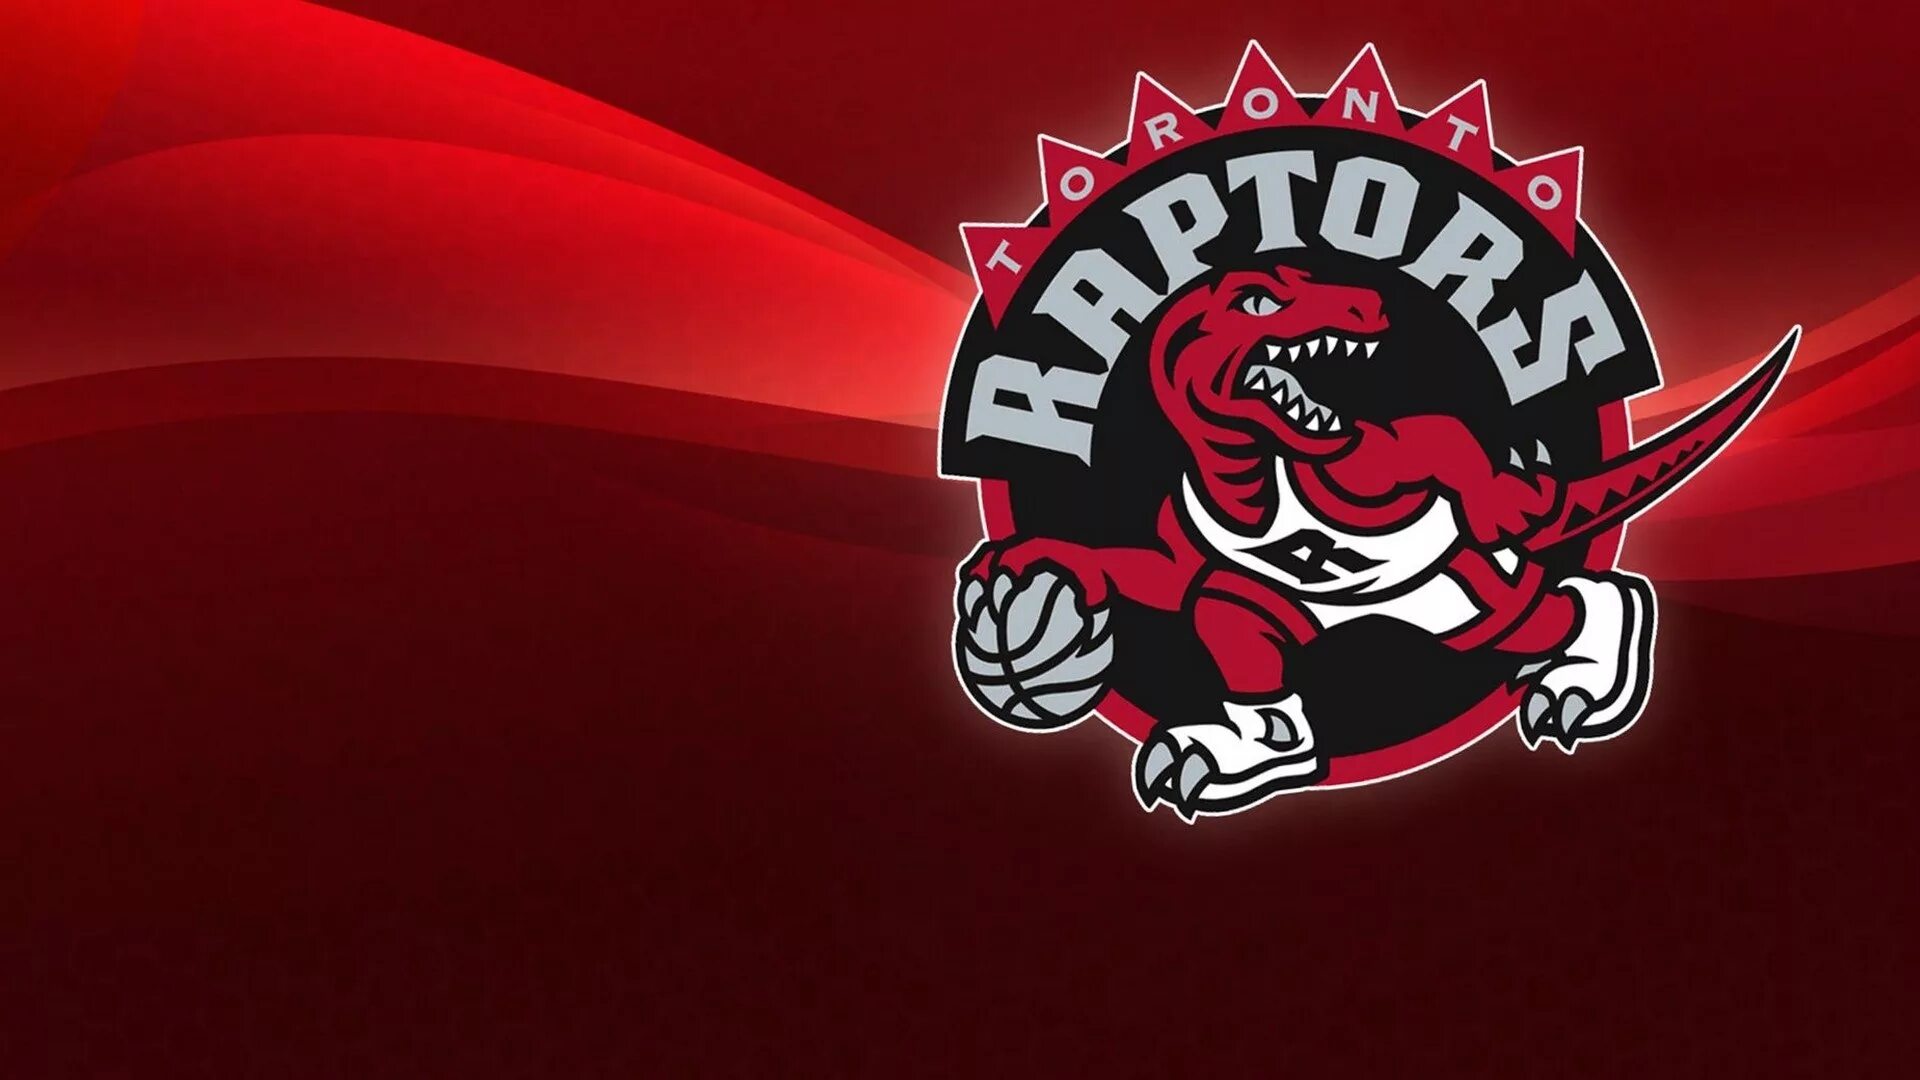 Toronto raptors. Торонто Рэпторс логотип. Toronto Raptors логотип. Торонто НБА логотип. НБА – Торонто Рэпторс.